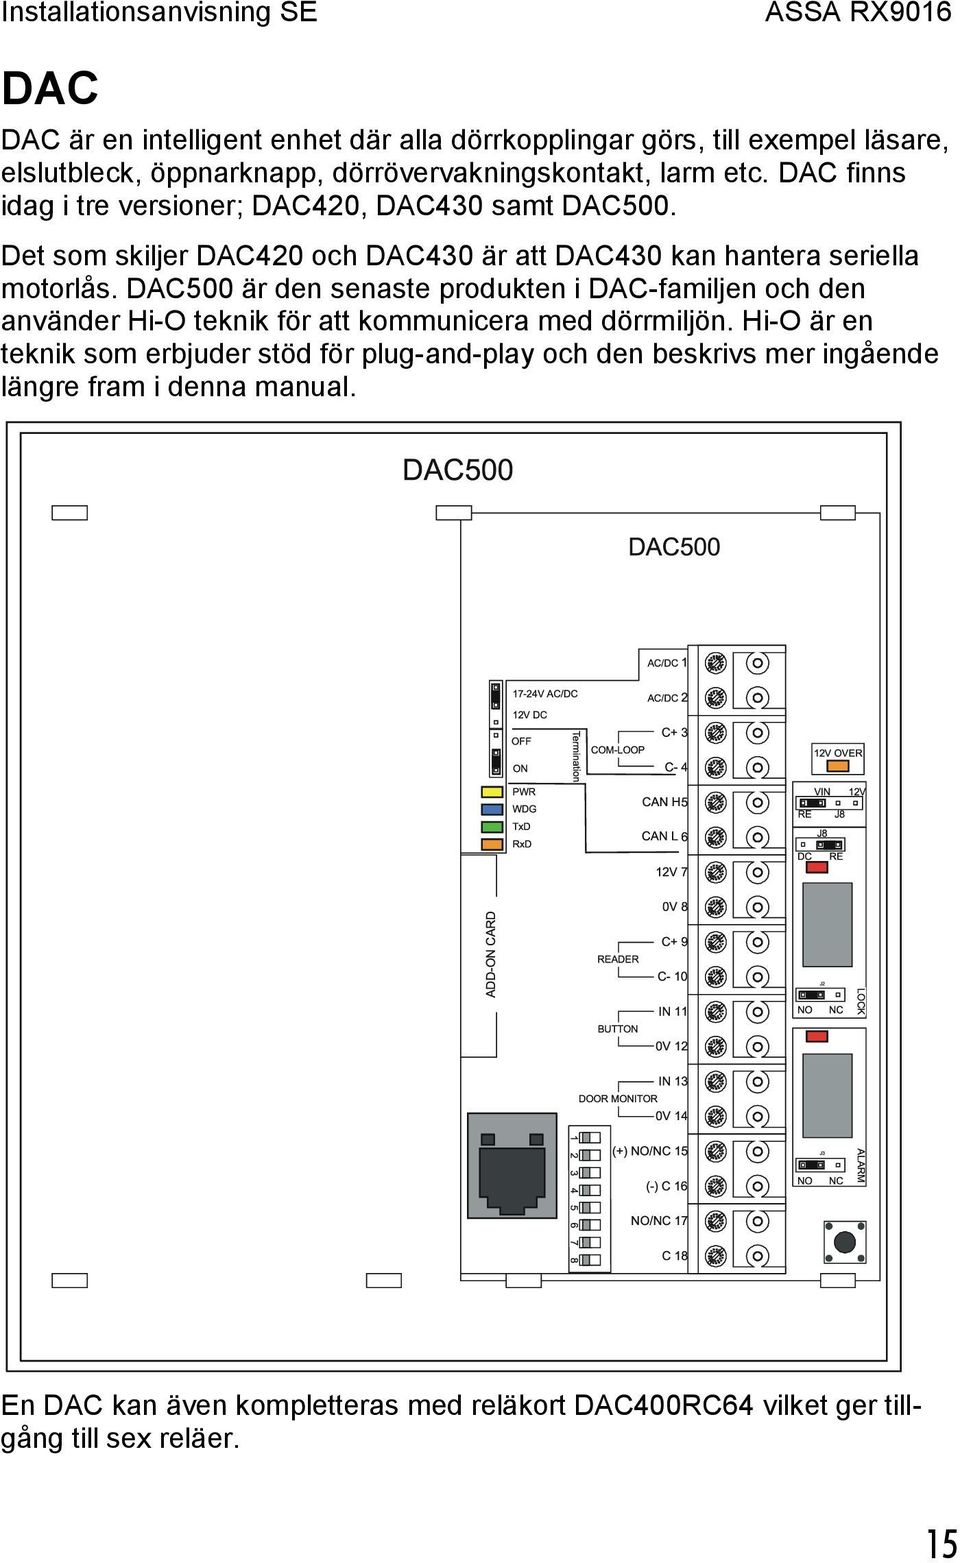 DAC500 är den senaste produkten i DAC-familjen och den använder Hi-O teknik för att kommunicera med dörrmiljön.